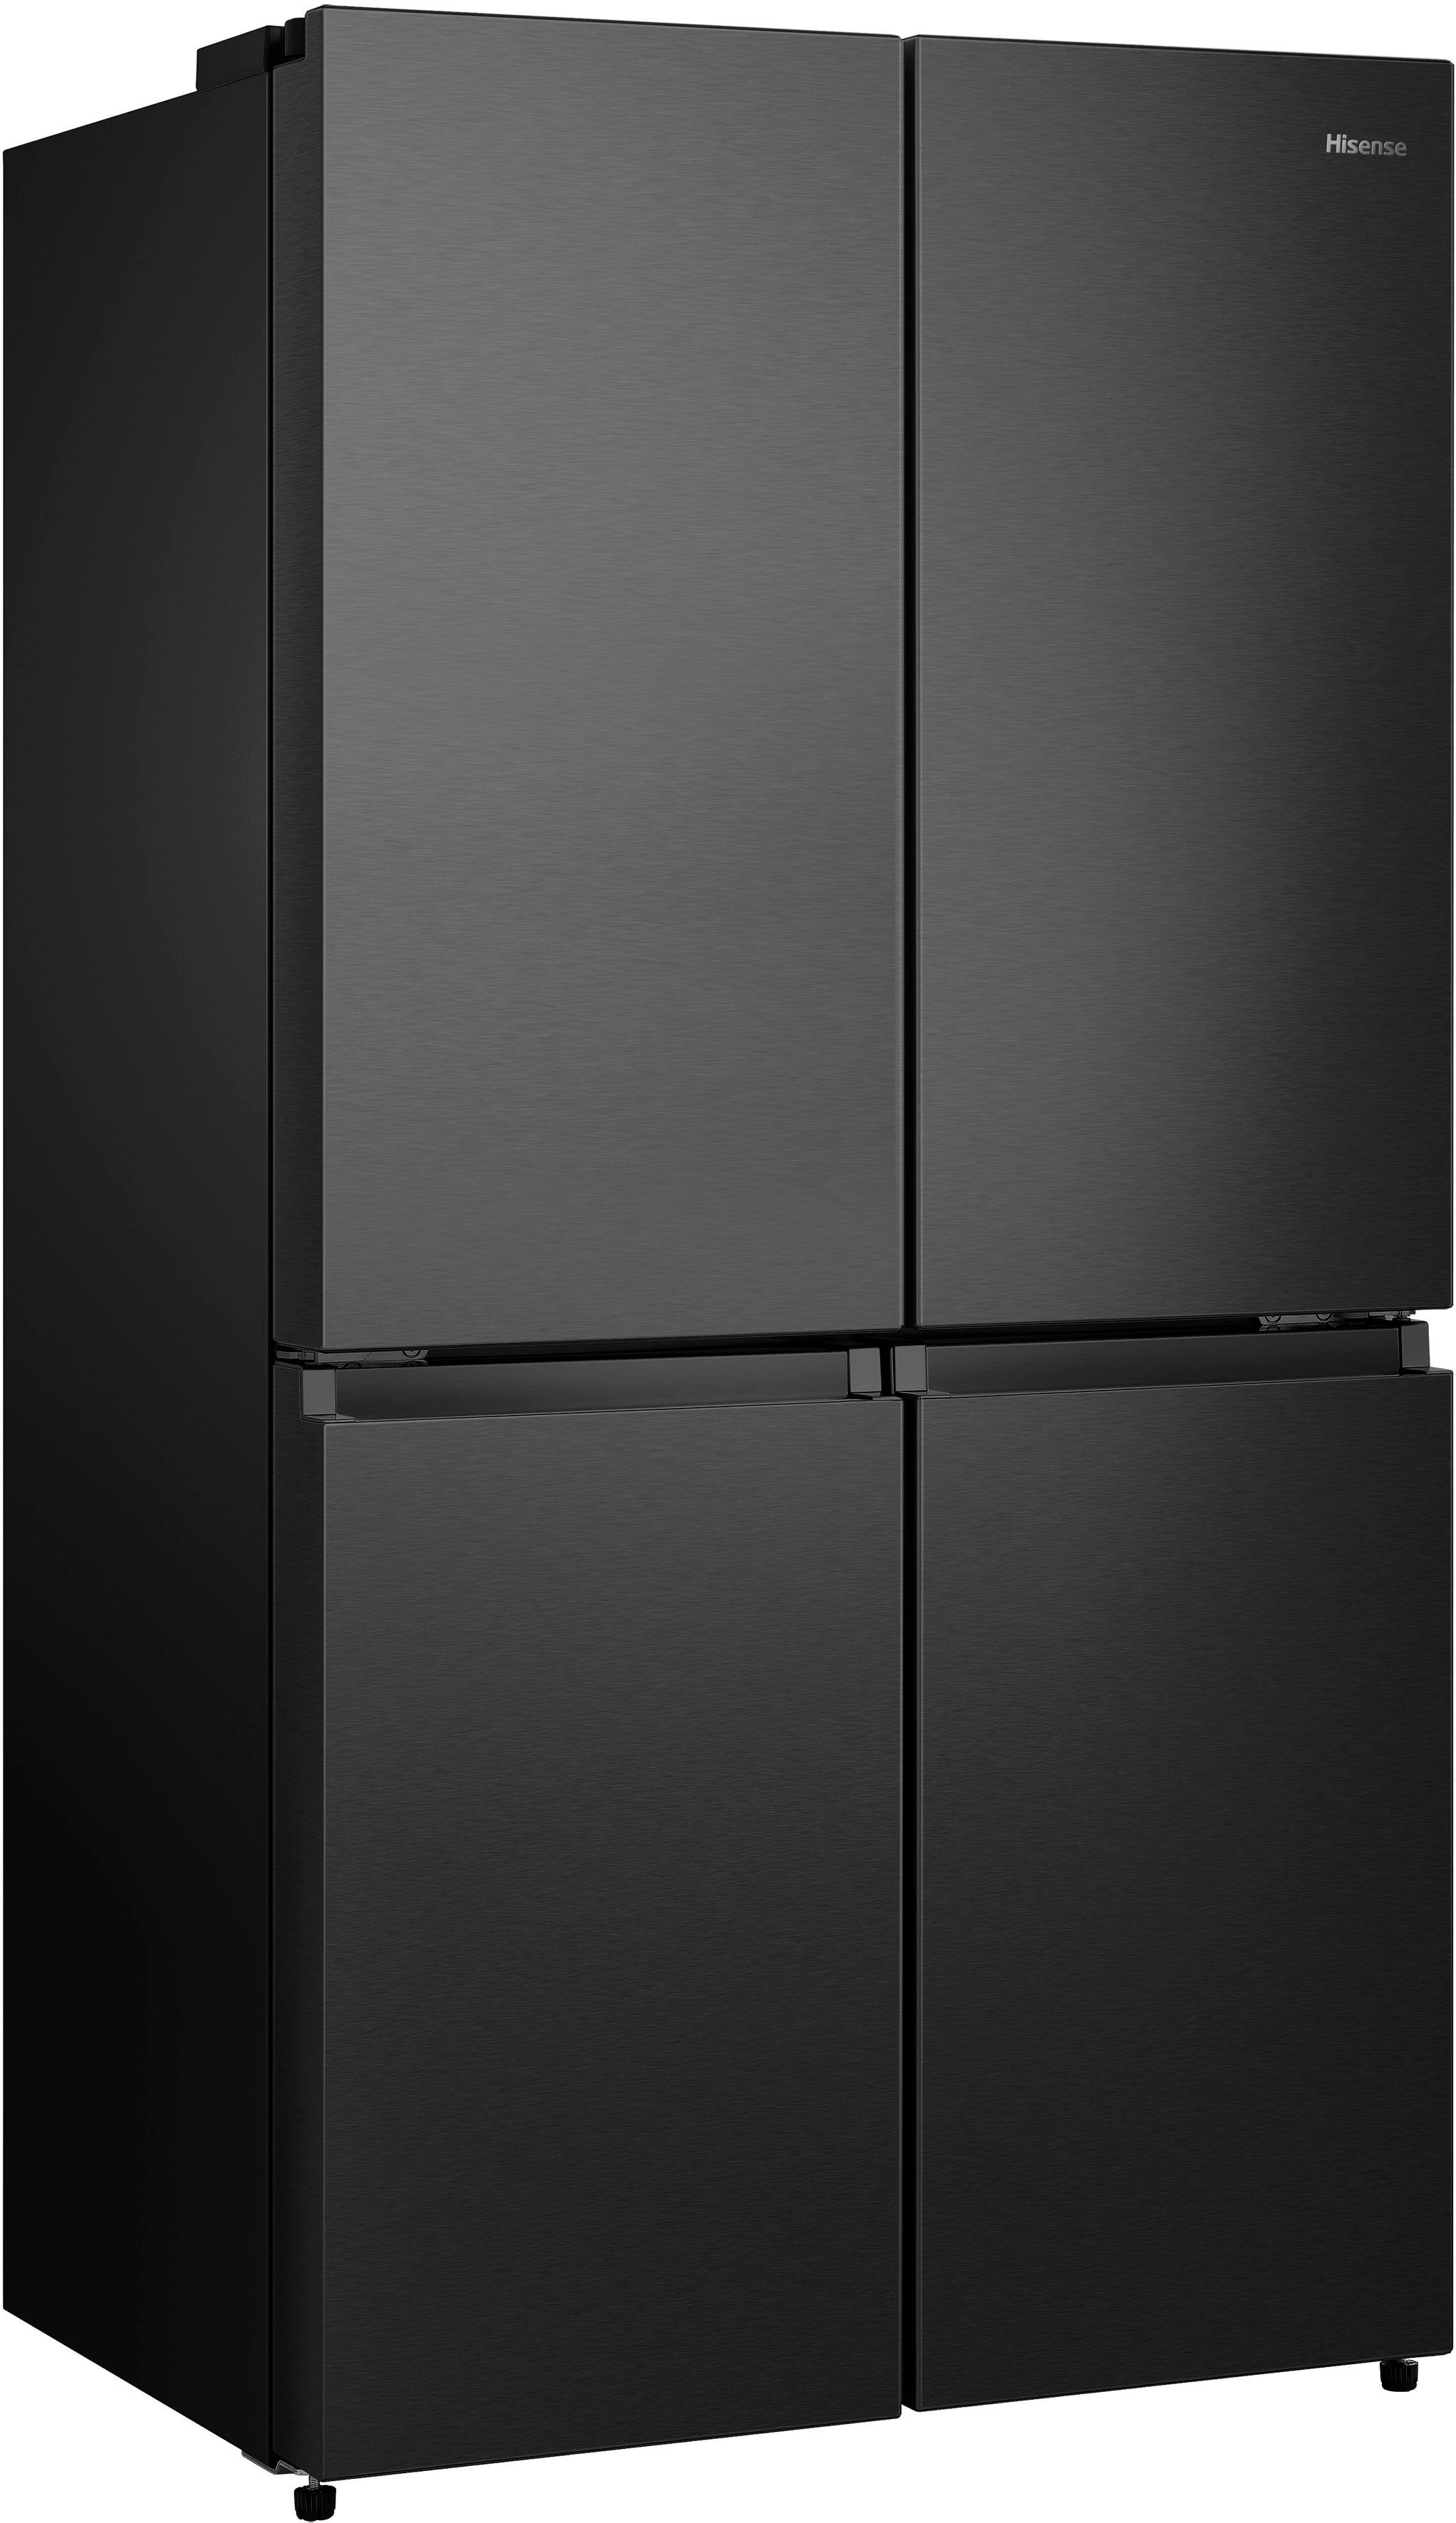 Hisense Multi Door RQ758N4SAFE, 179 cm hoch, 92 cm breit schwarzes Edelstahl | Side-by-Side Kühlschränke